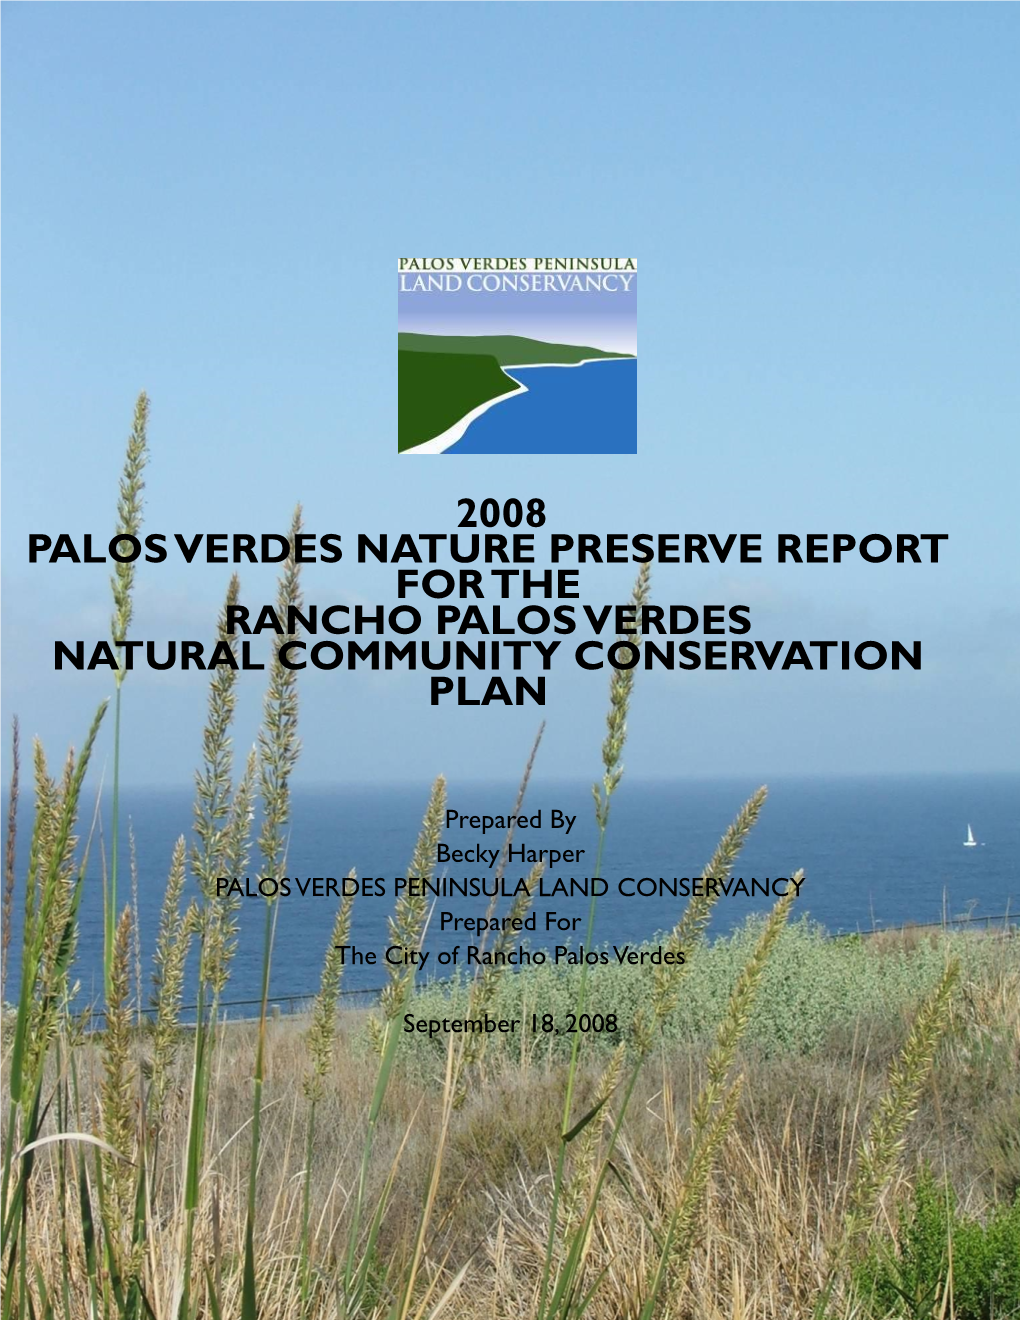 2008 Palos Verdes Nature Preserve Report for the Rancho Palos Verdes Natural Community Conservation Plan